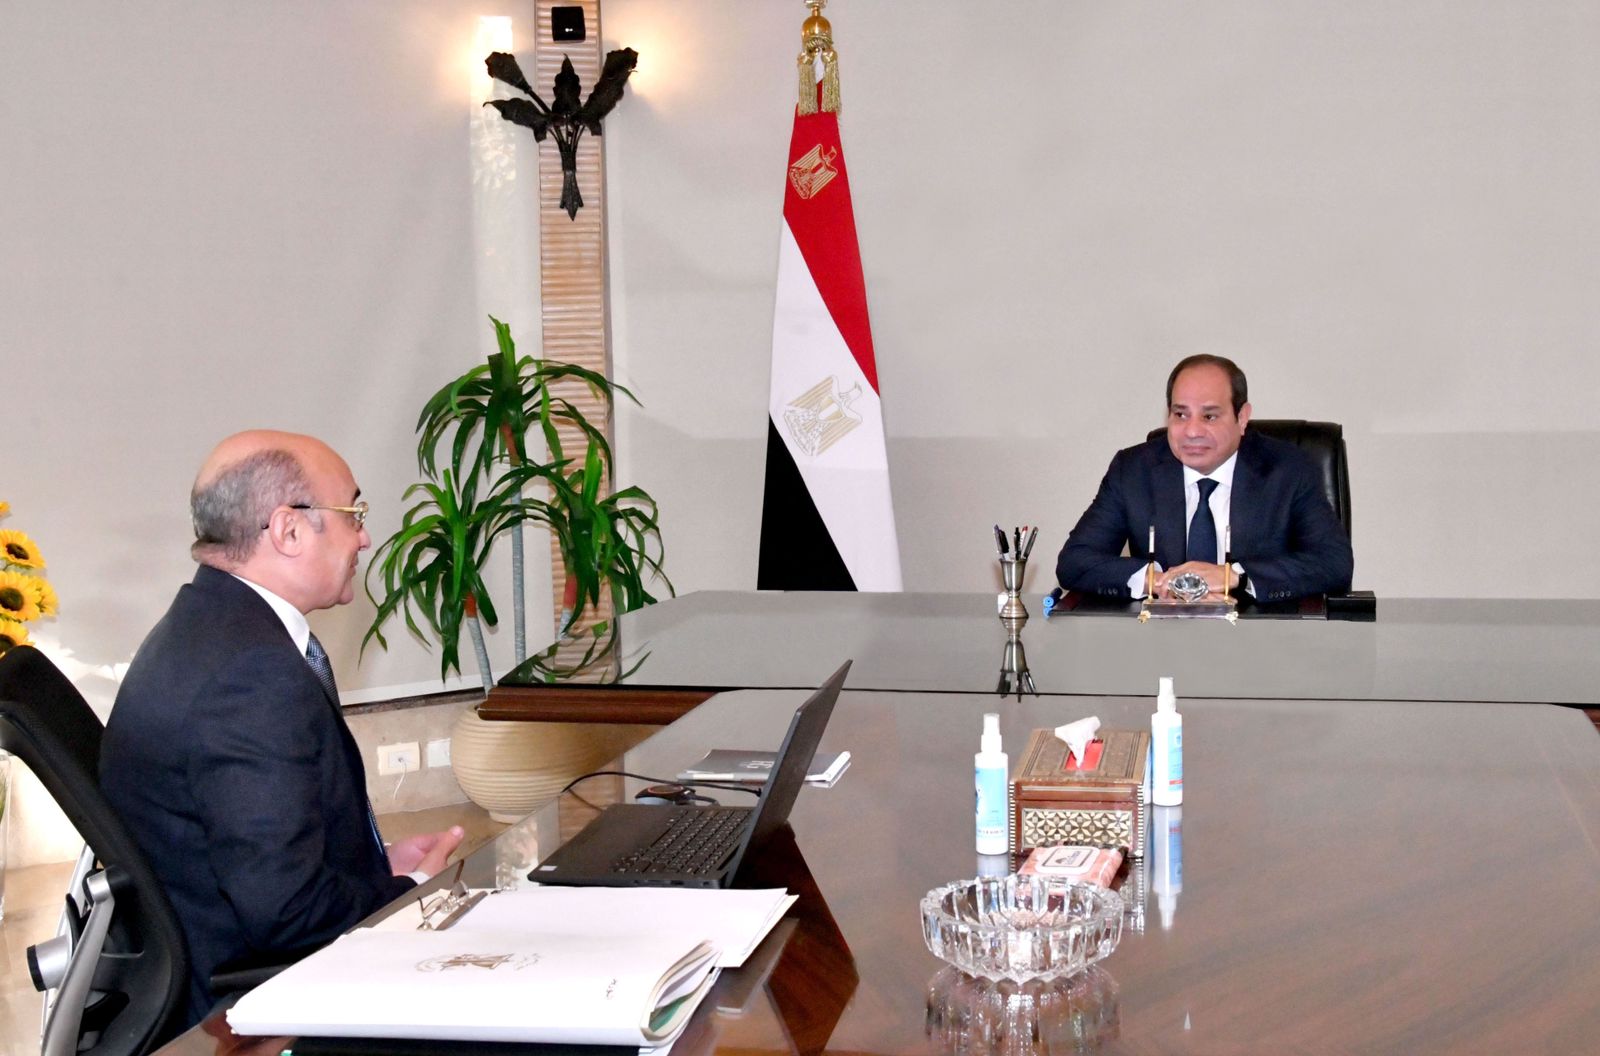 الرئيس السيسي يثني على جهود إصدار المحررات عن بعد ويوجه بالتوسع فيها بالسفارات والقنصليات المصرية بالخارج   